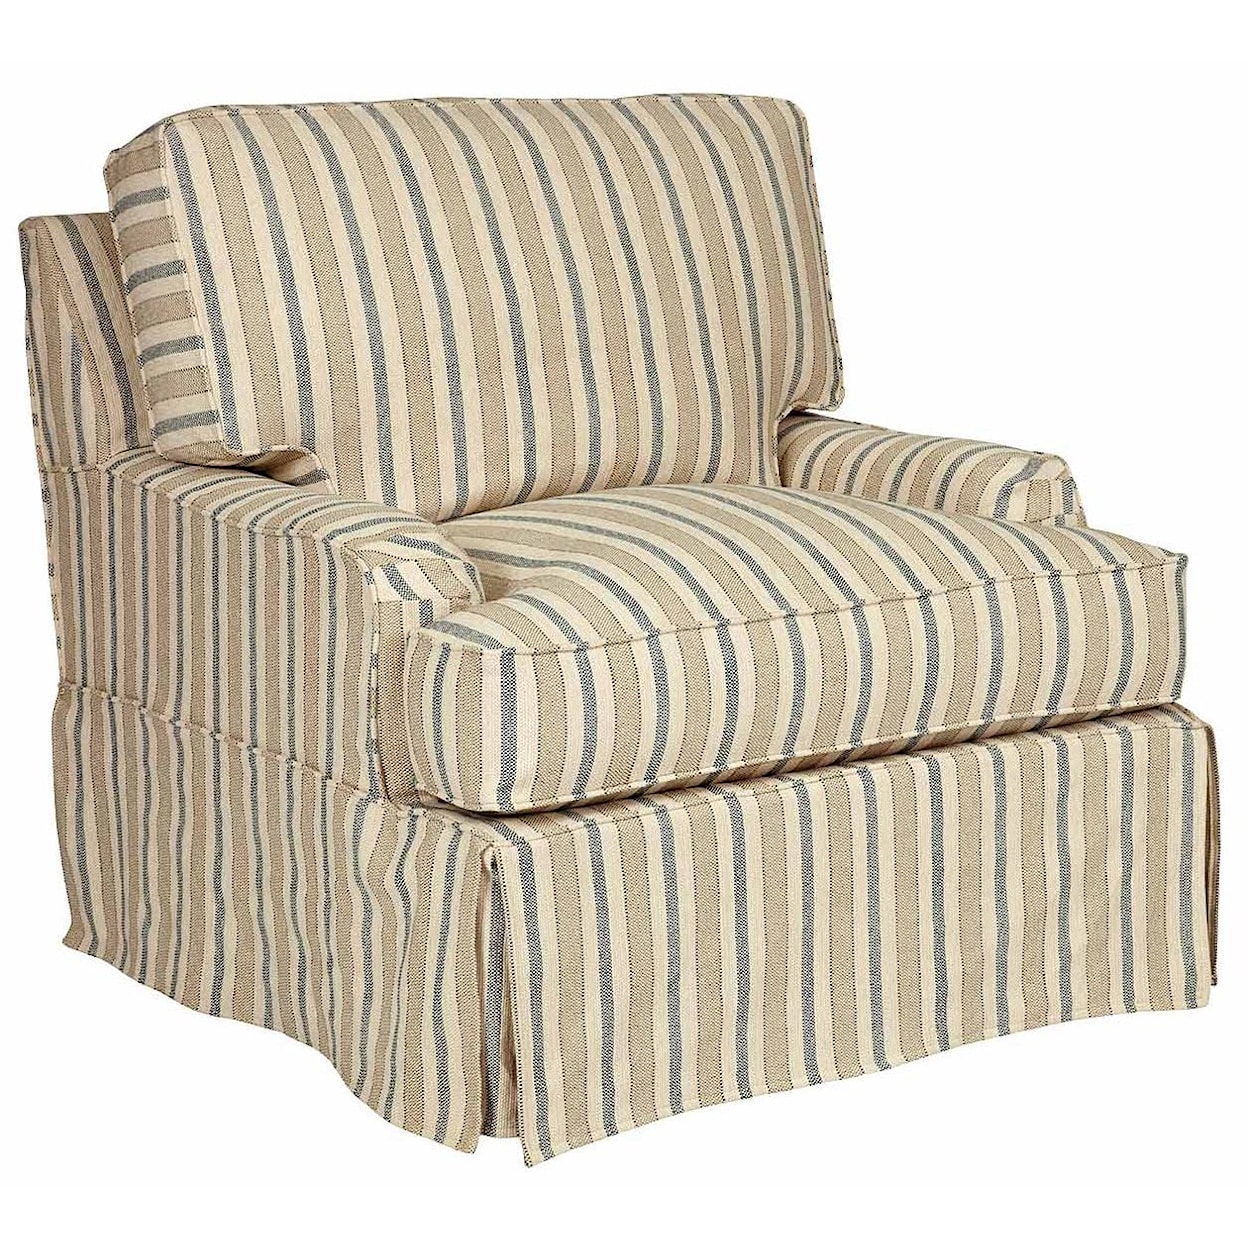 Kincaid Furniture Simone  Chair